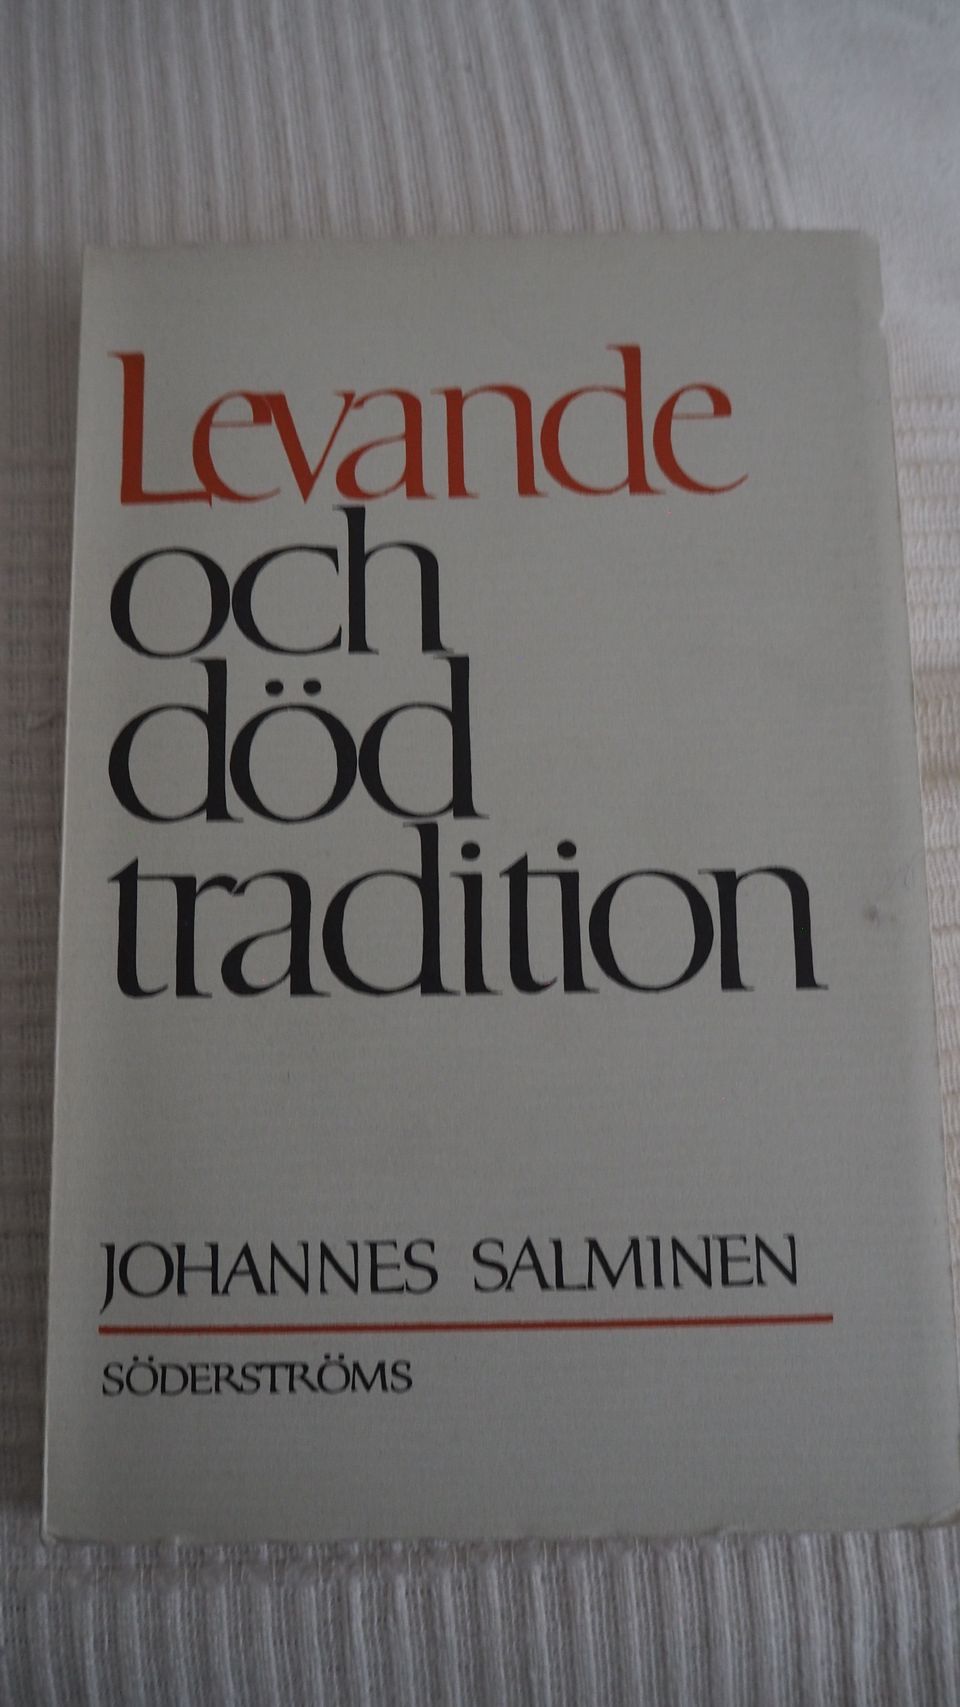 J.Salminen: LEVANDE OCH DÖD TRADITION, 1963